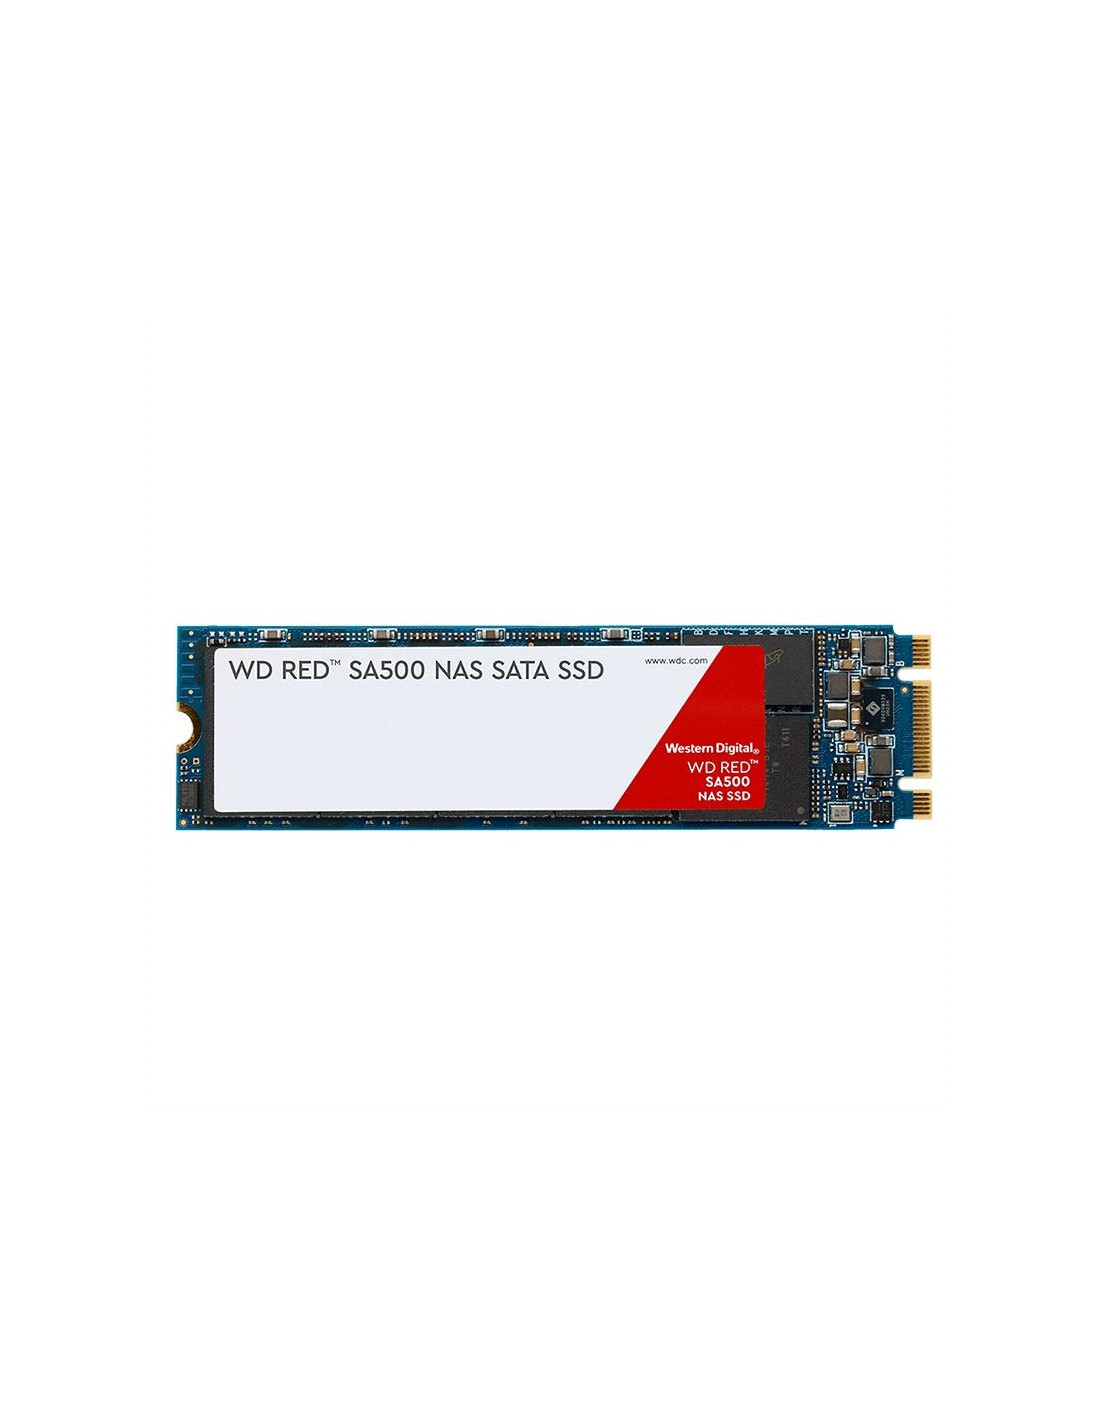 Disco duro  WDS100T1R0B 1TB Disco M.2 SATA WD RED SA500 560MB/s